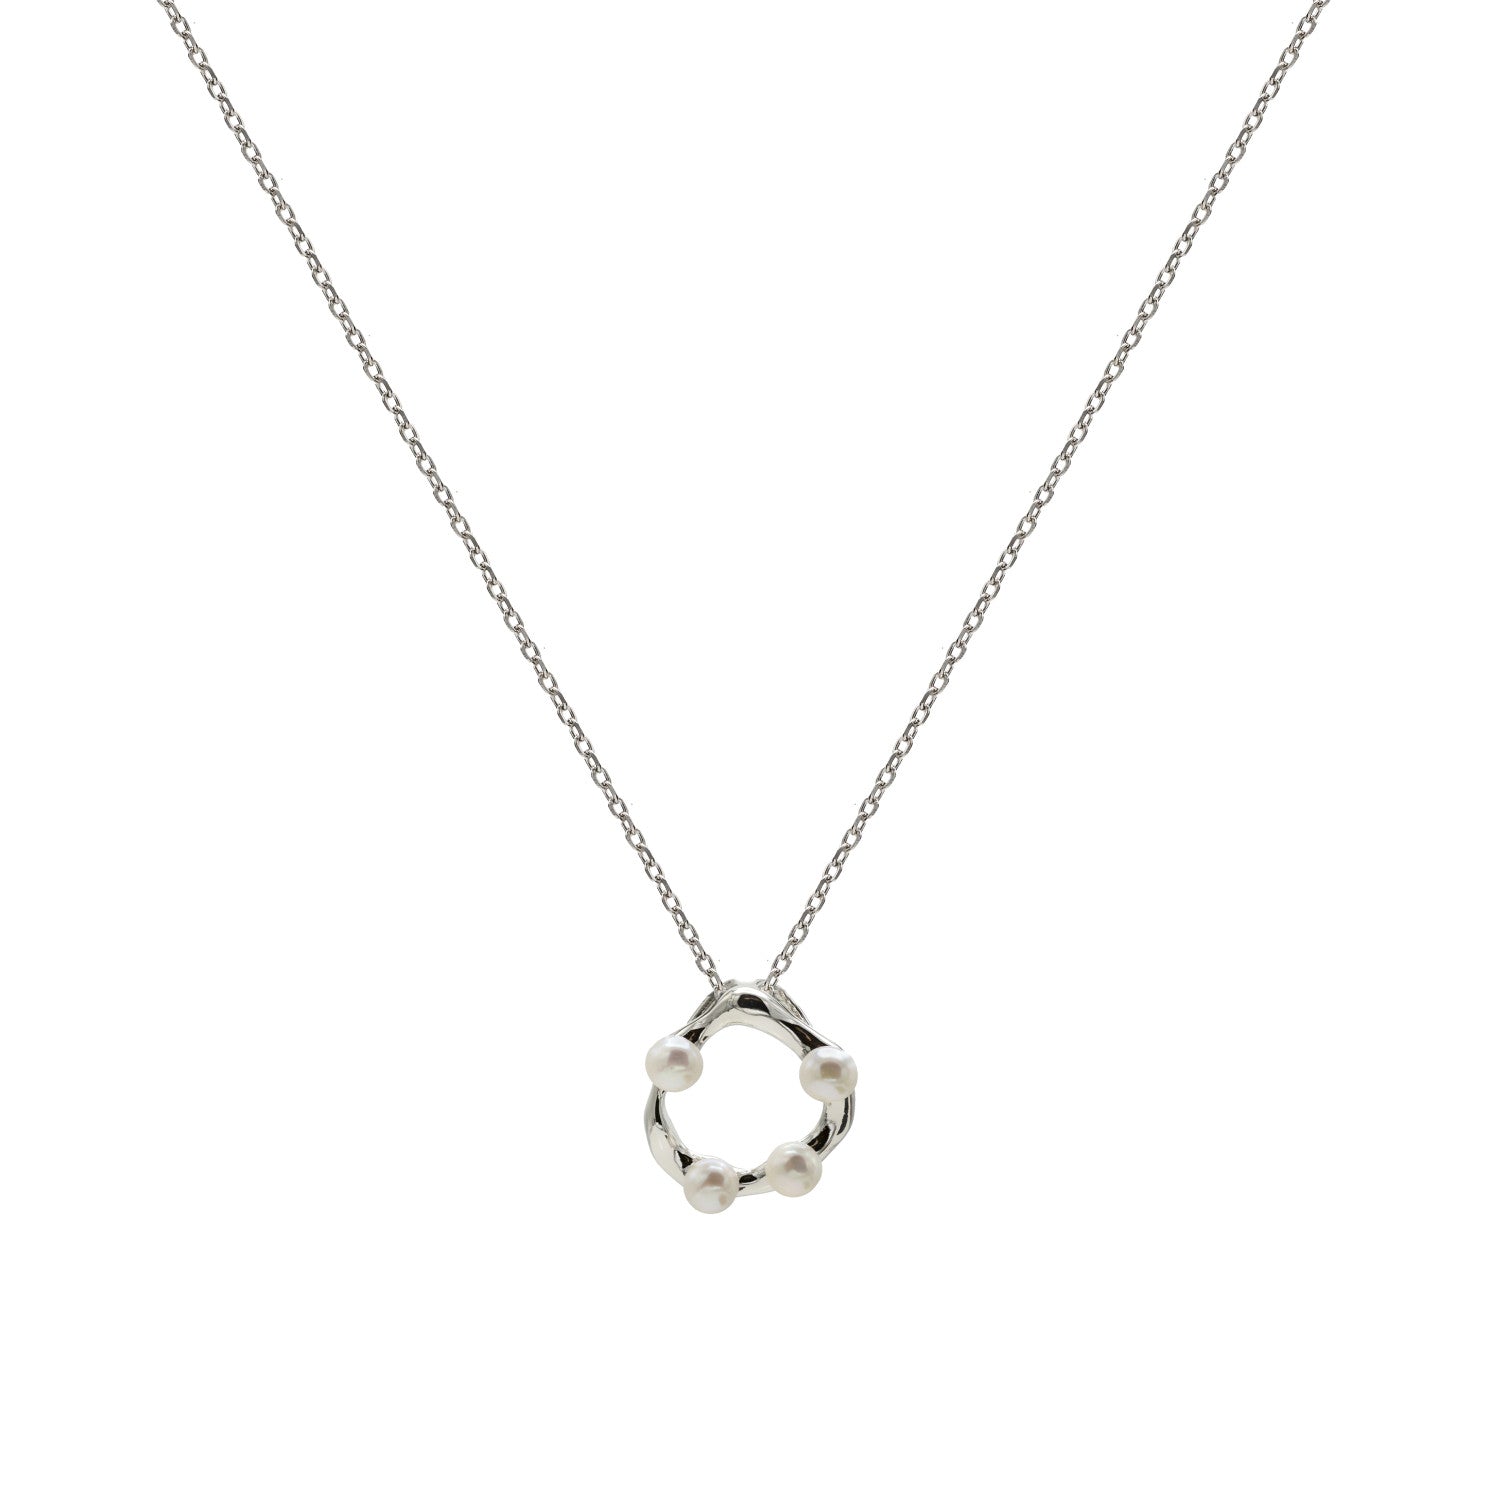 Collar · Collares originales de plata diseño irregular con mini perlas incrustadas